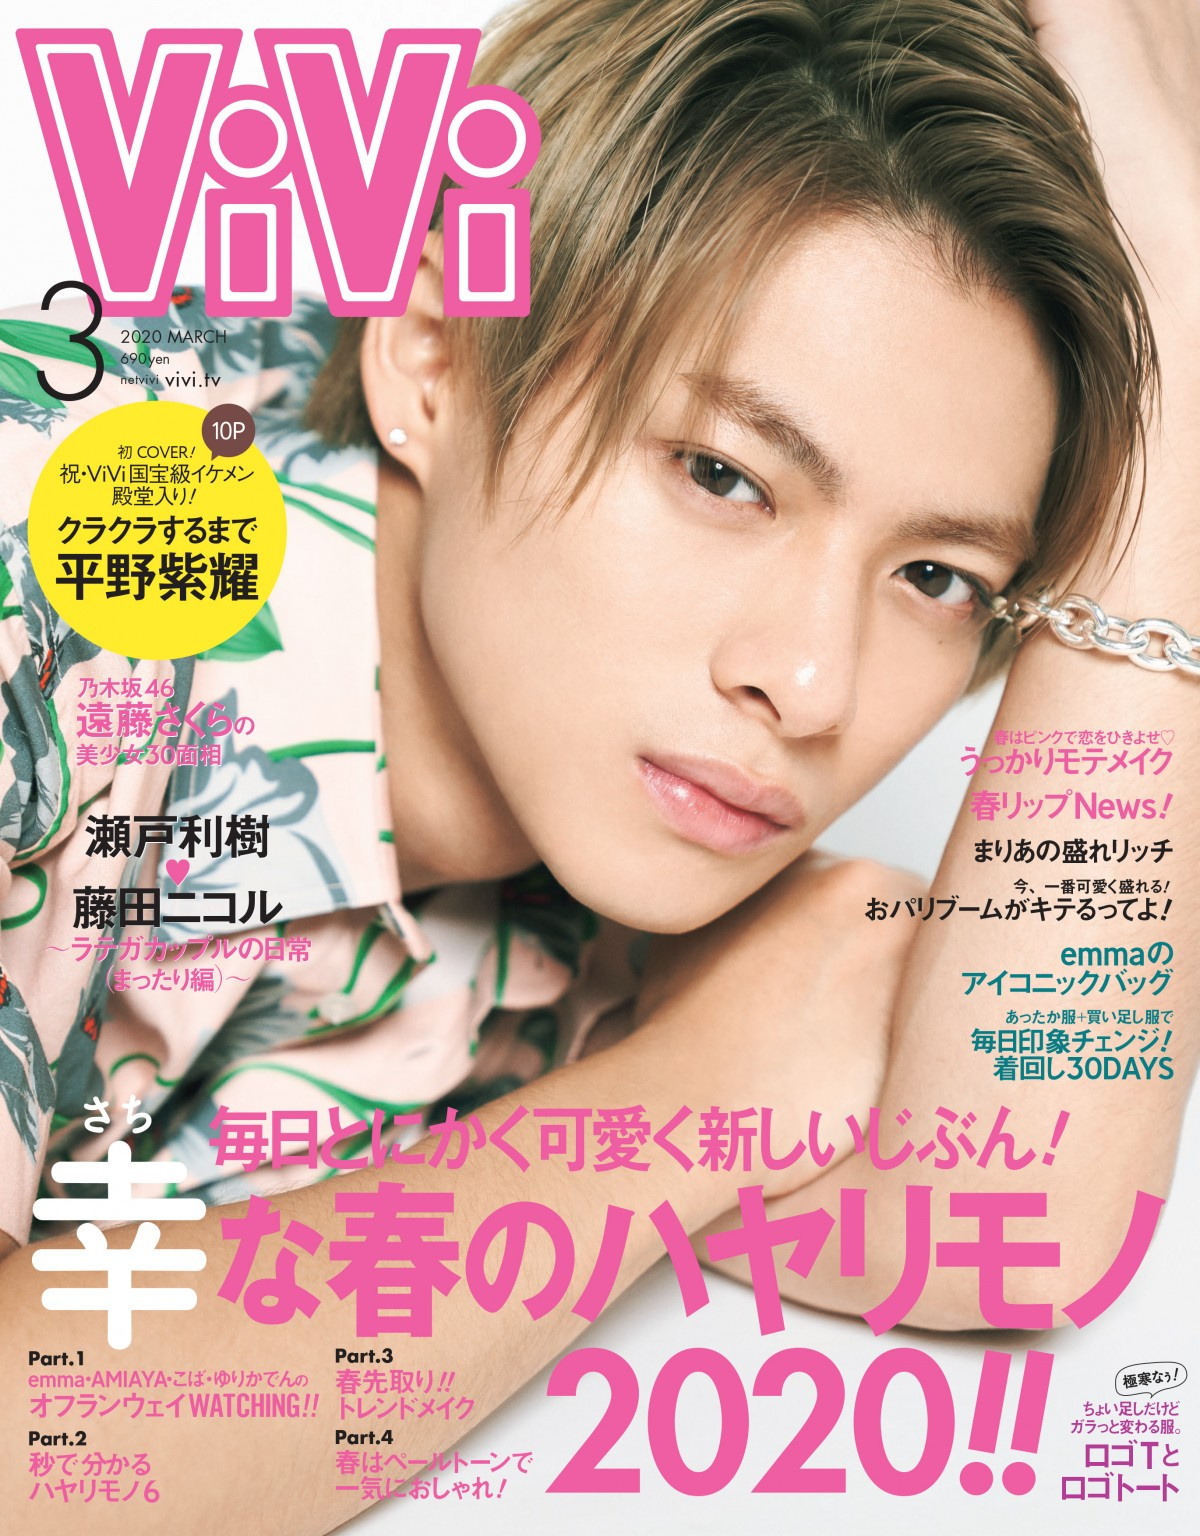 国宝級イケメン 平野紫耀カバー Vivi 完売店続出で異例の重版 特大ボード掲出 Oricon News